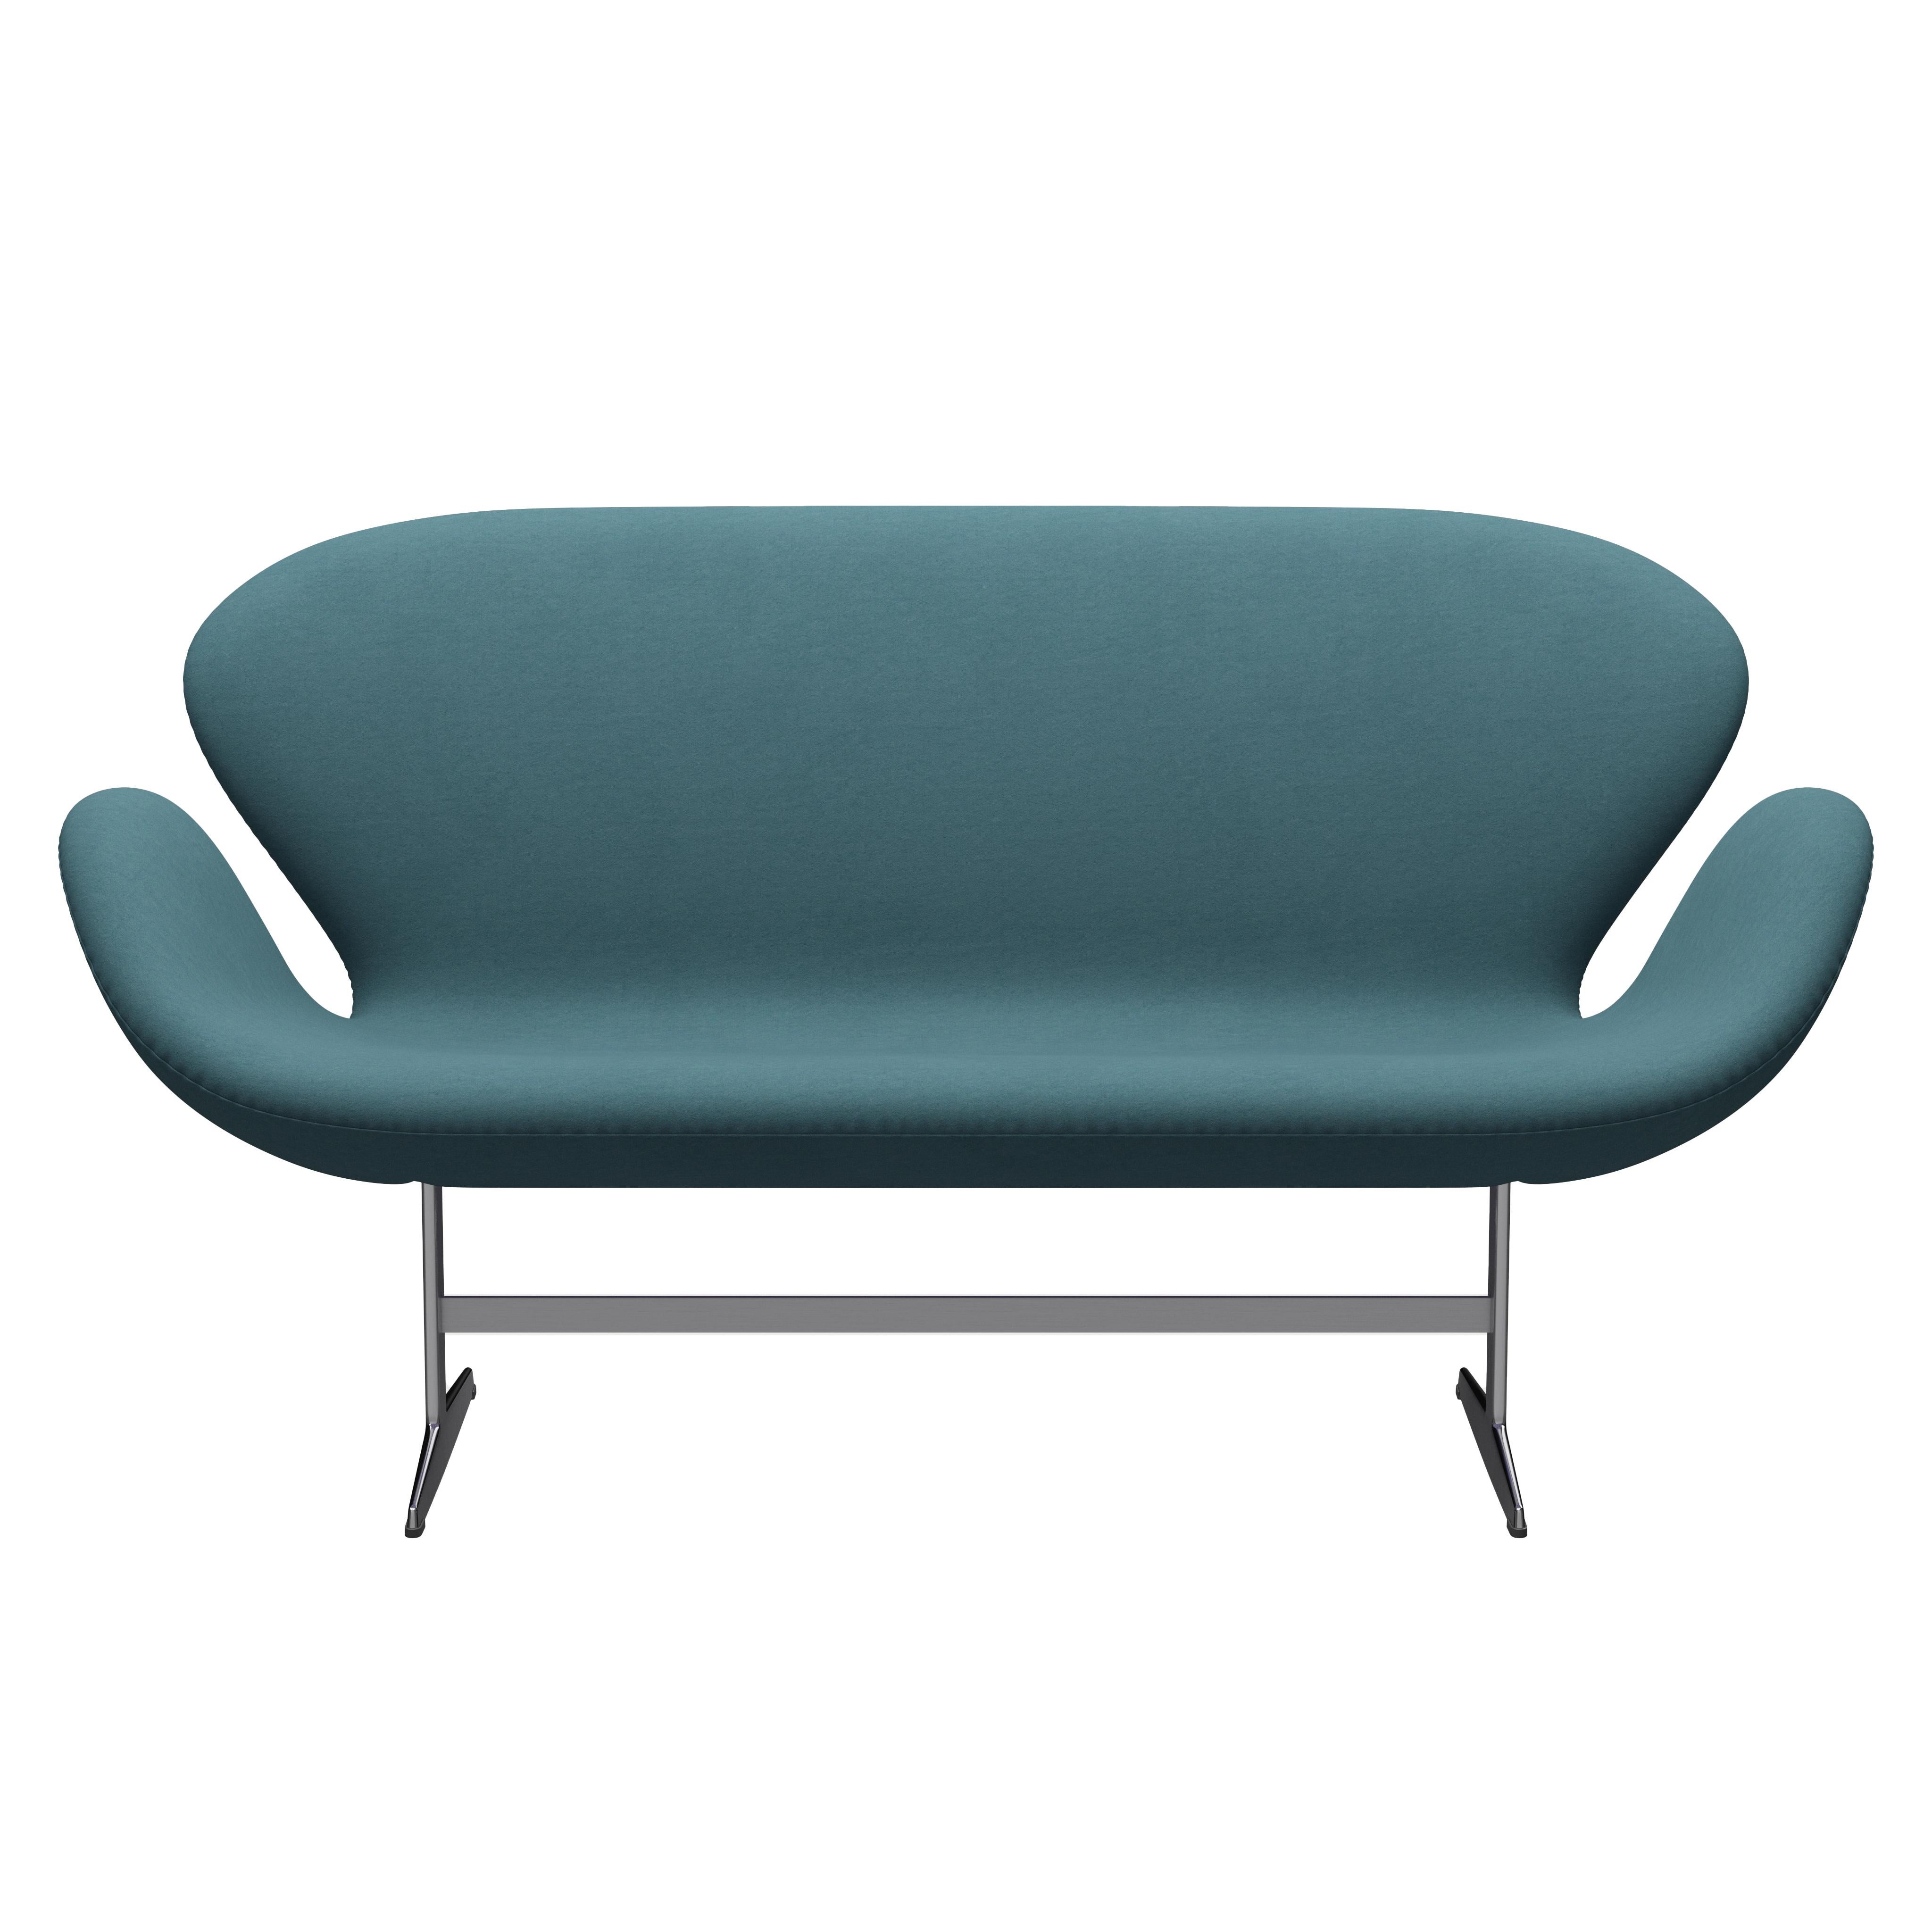 Arne Jacobsen 'Swan' Sofa for Fritz Hansen in Fabric Upholstery (Cat. 3) For Sale 4